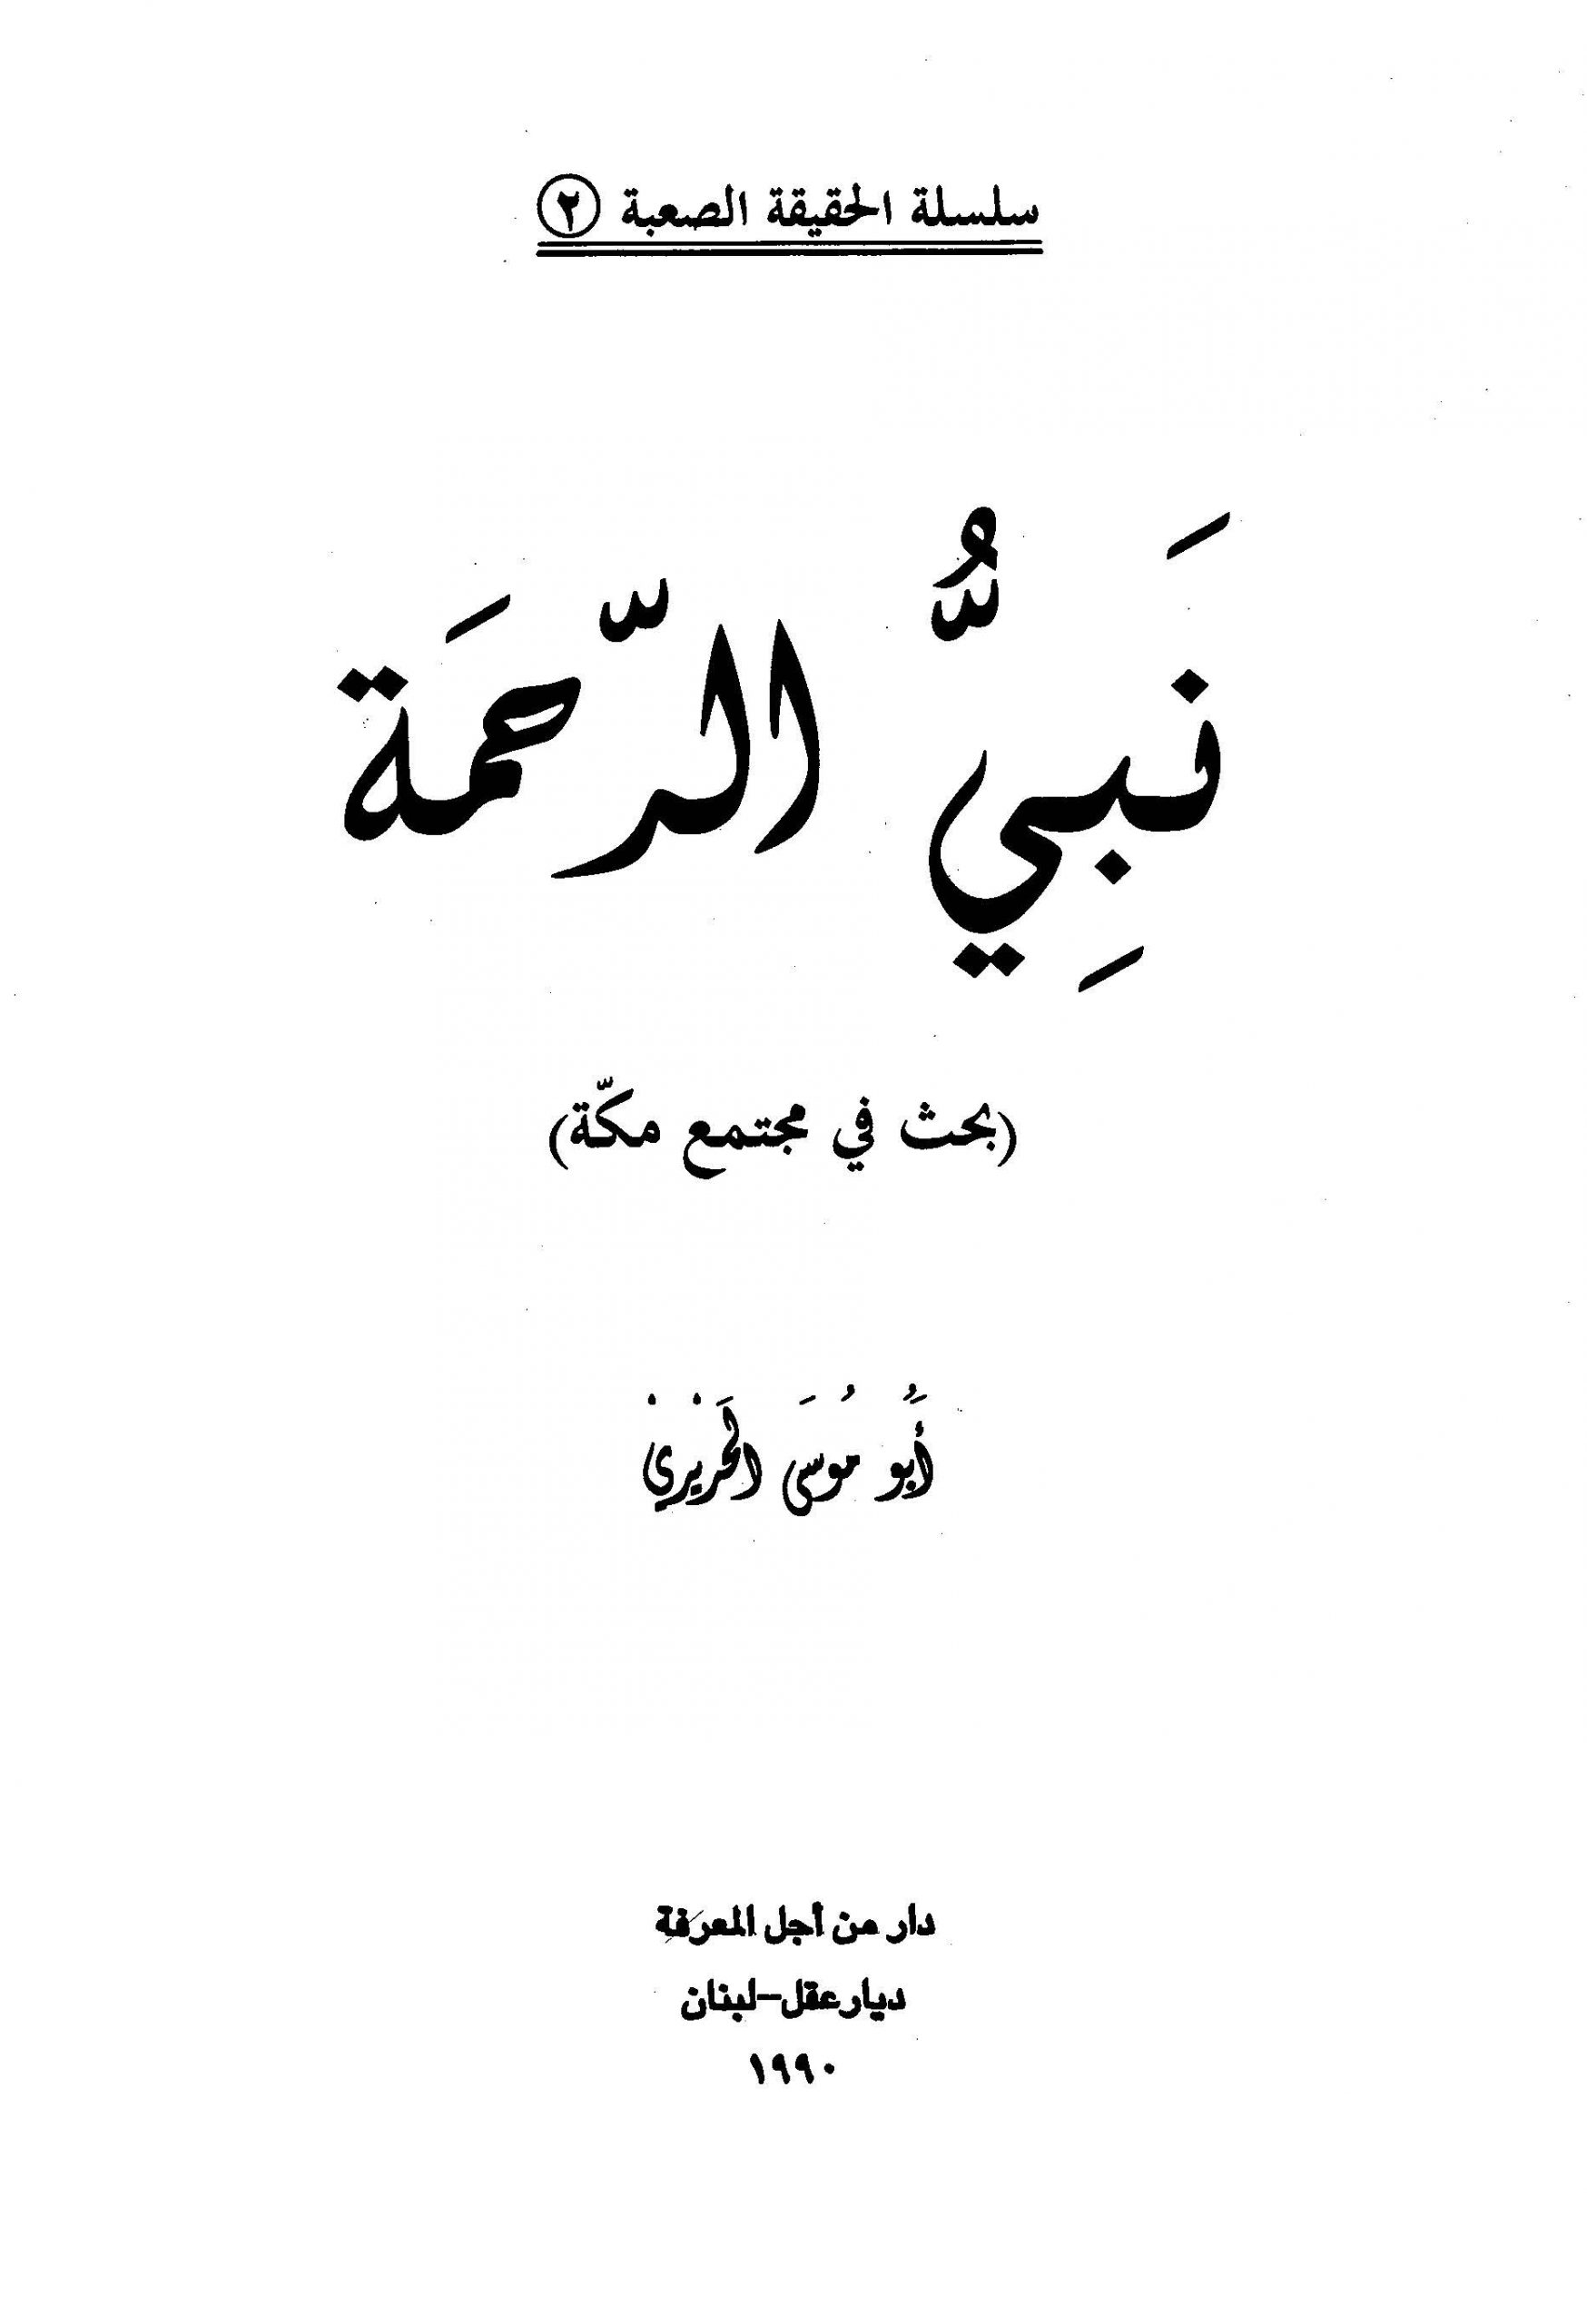 سلسلة الحقيقة الصعبة (2) - نبي الرحمة بحث في مجتمع مكة - أبو موسى الحريري